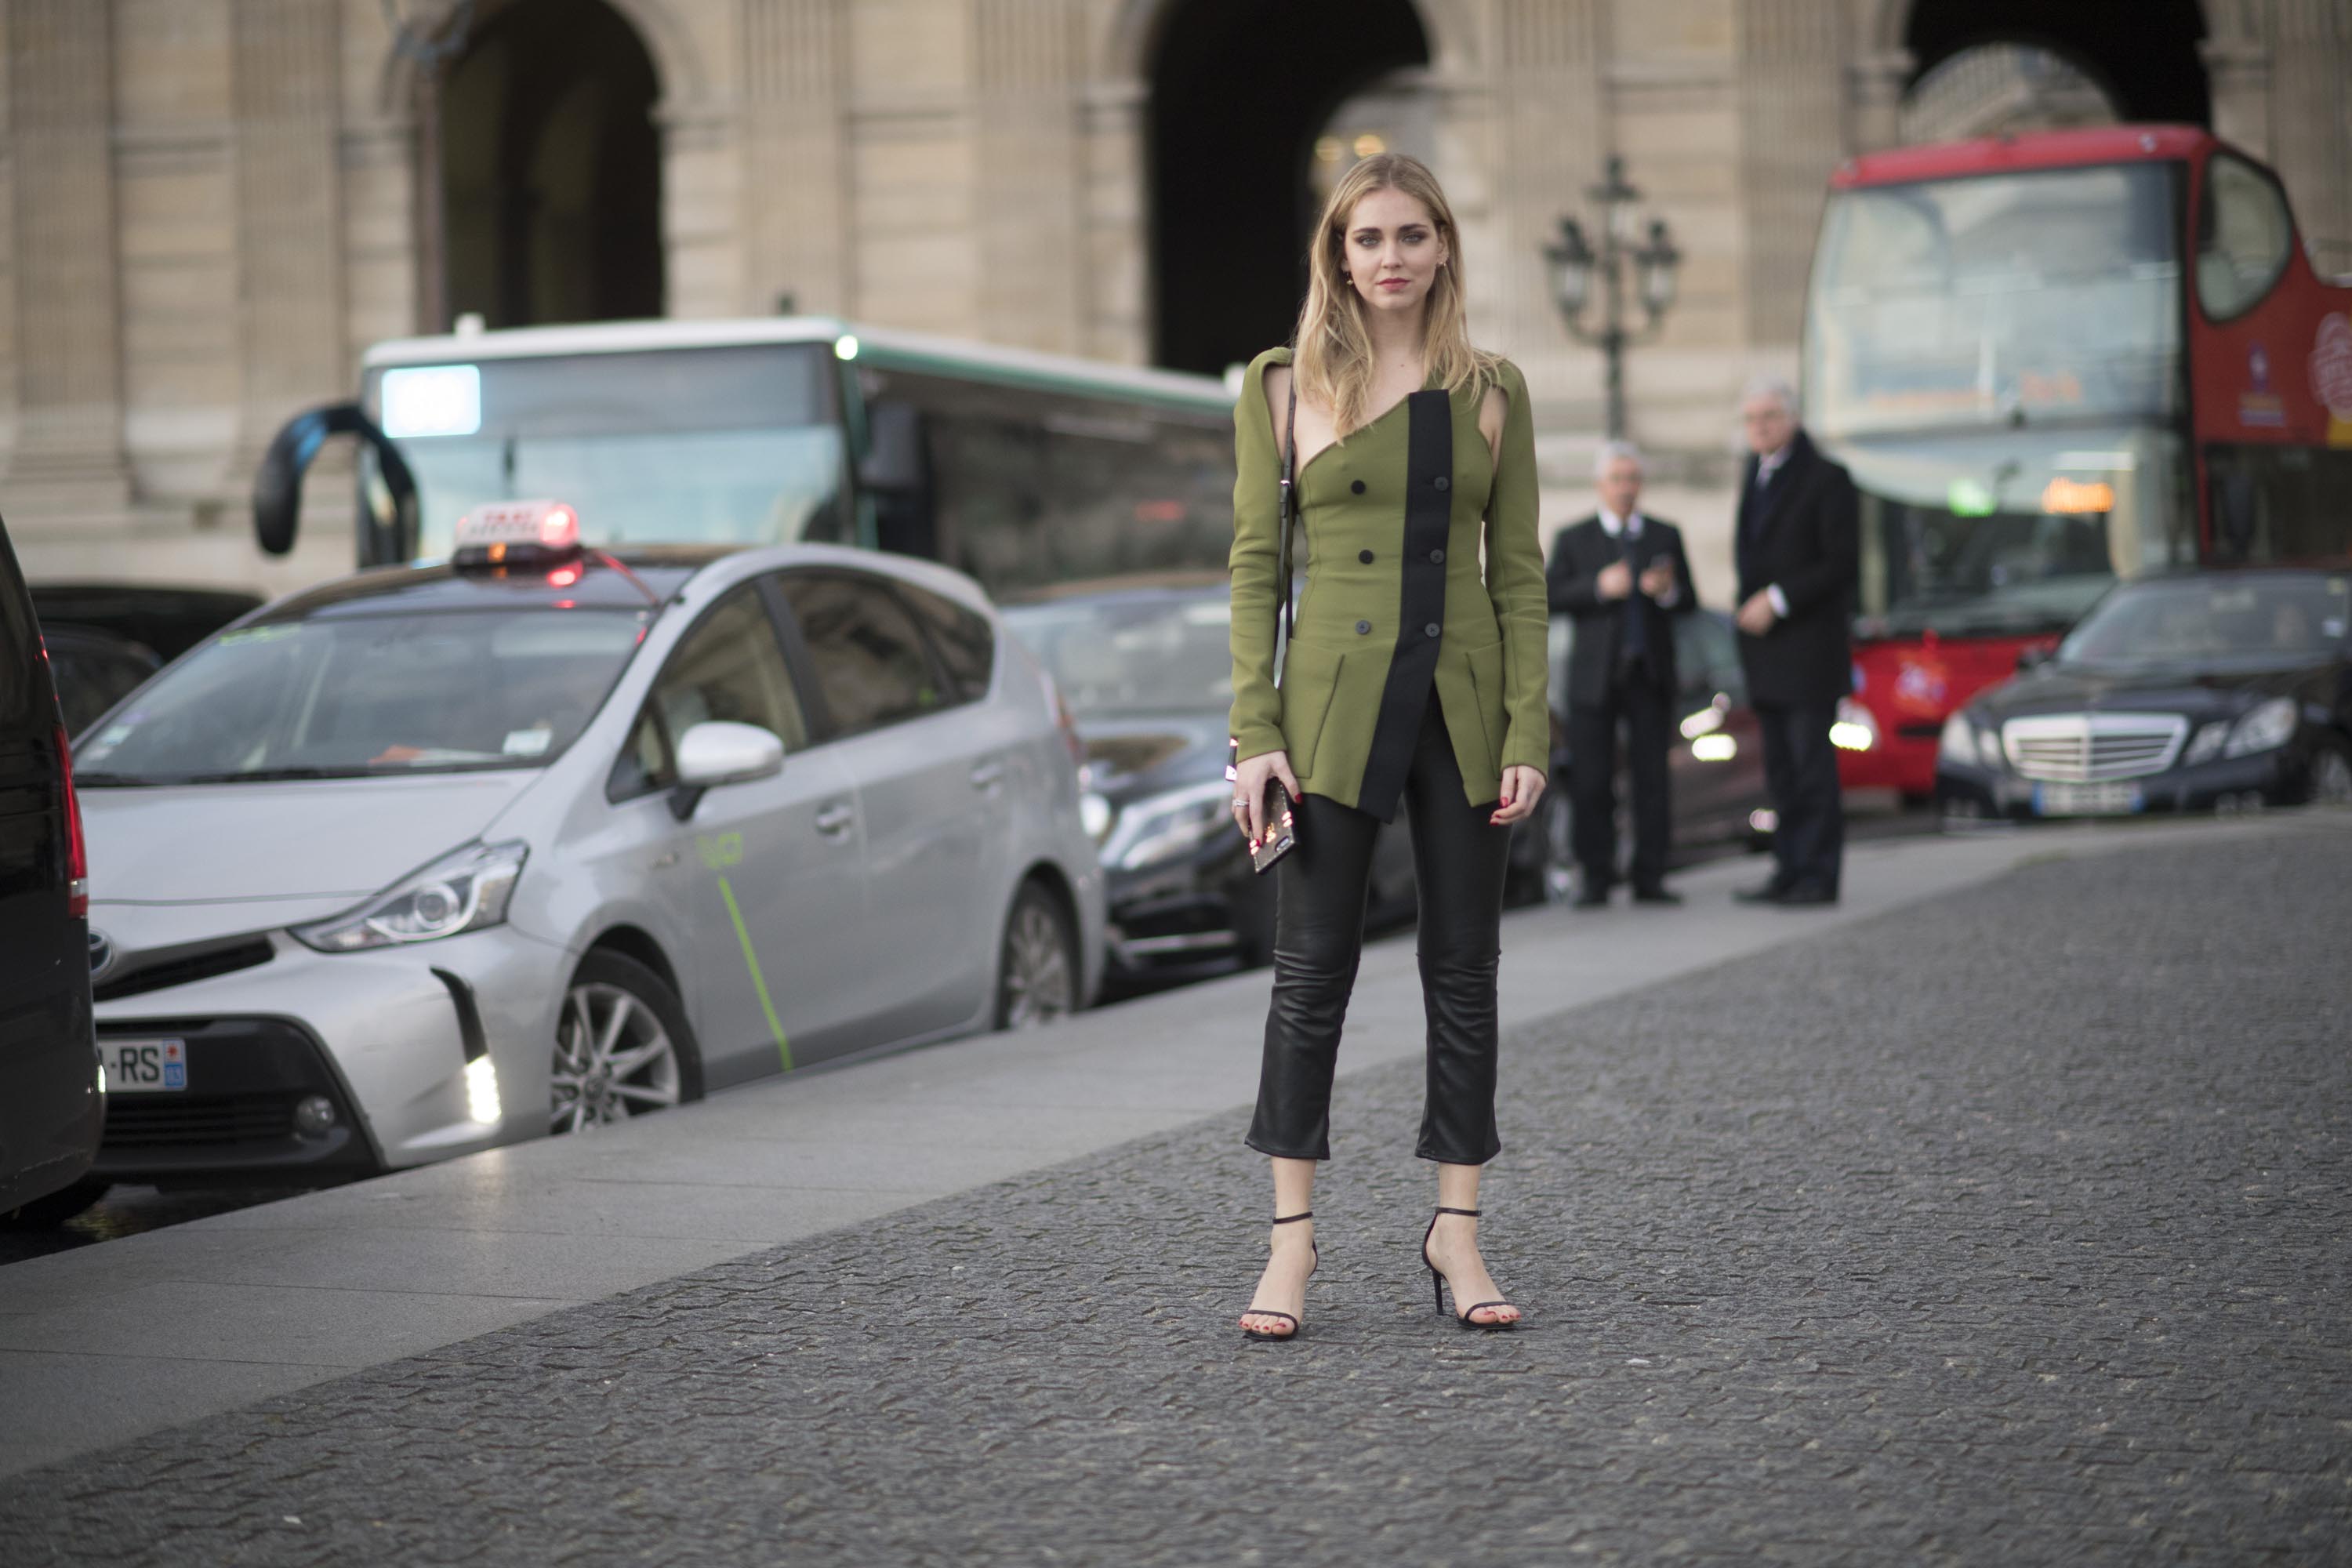 Street Style during Paris Fashion Week